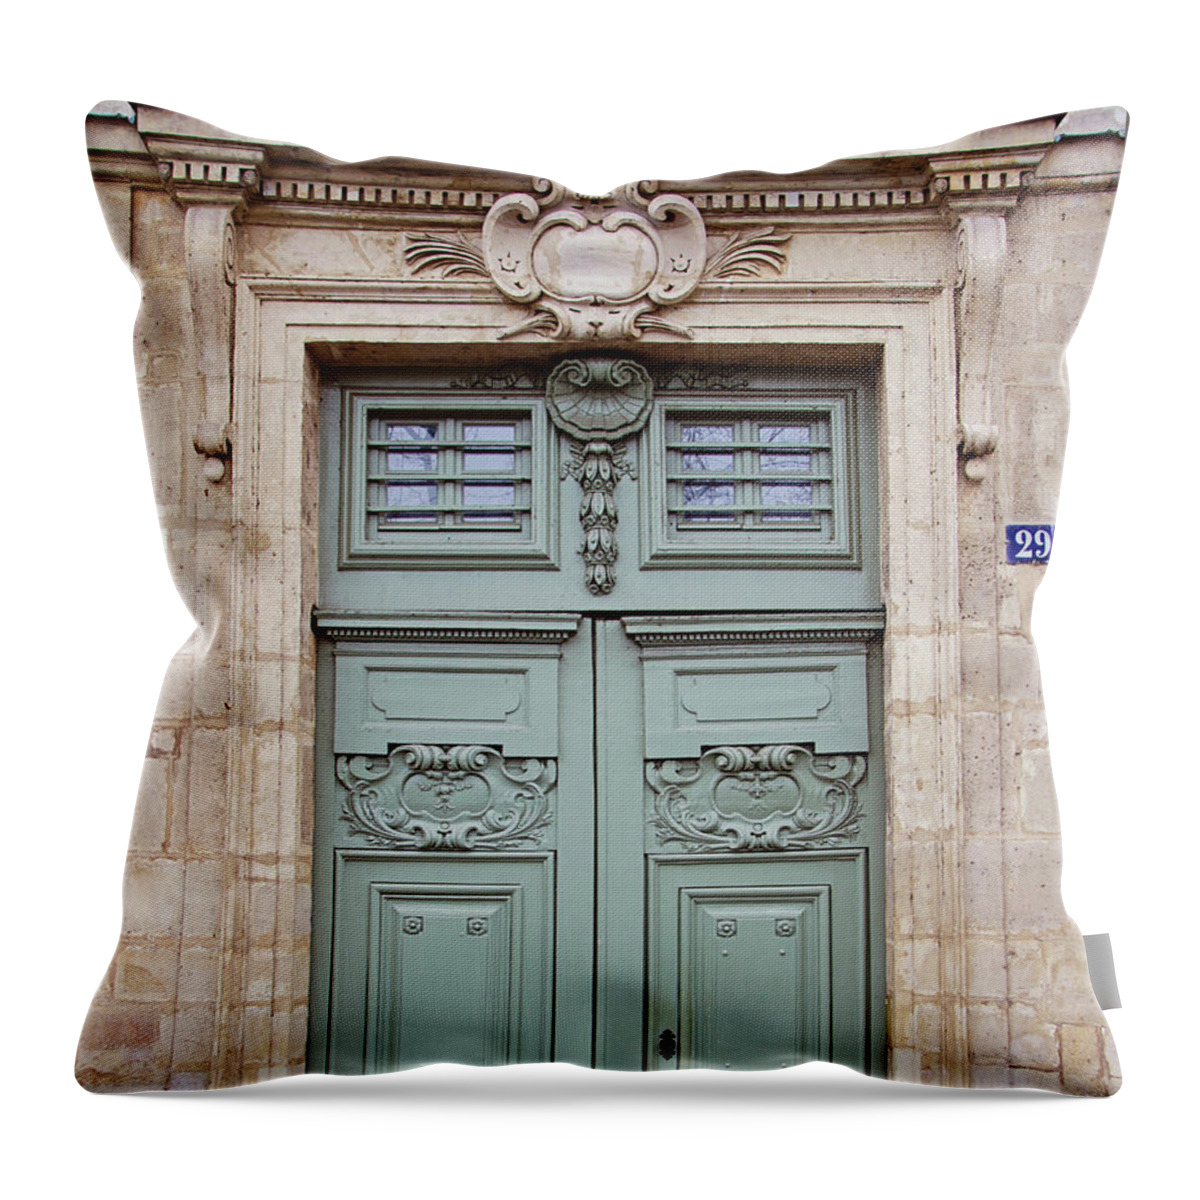 Paris Doors Throw Pillow featuring the photograph Paris Doors No. 29 - Paris, France by Melanie Alexandra Price